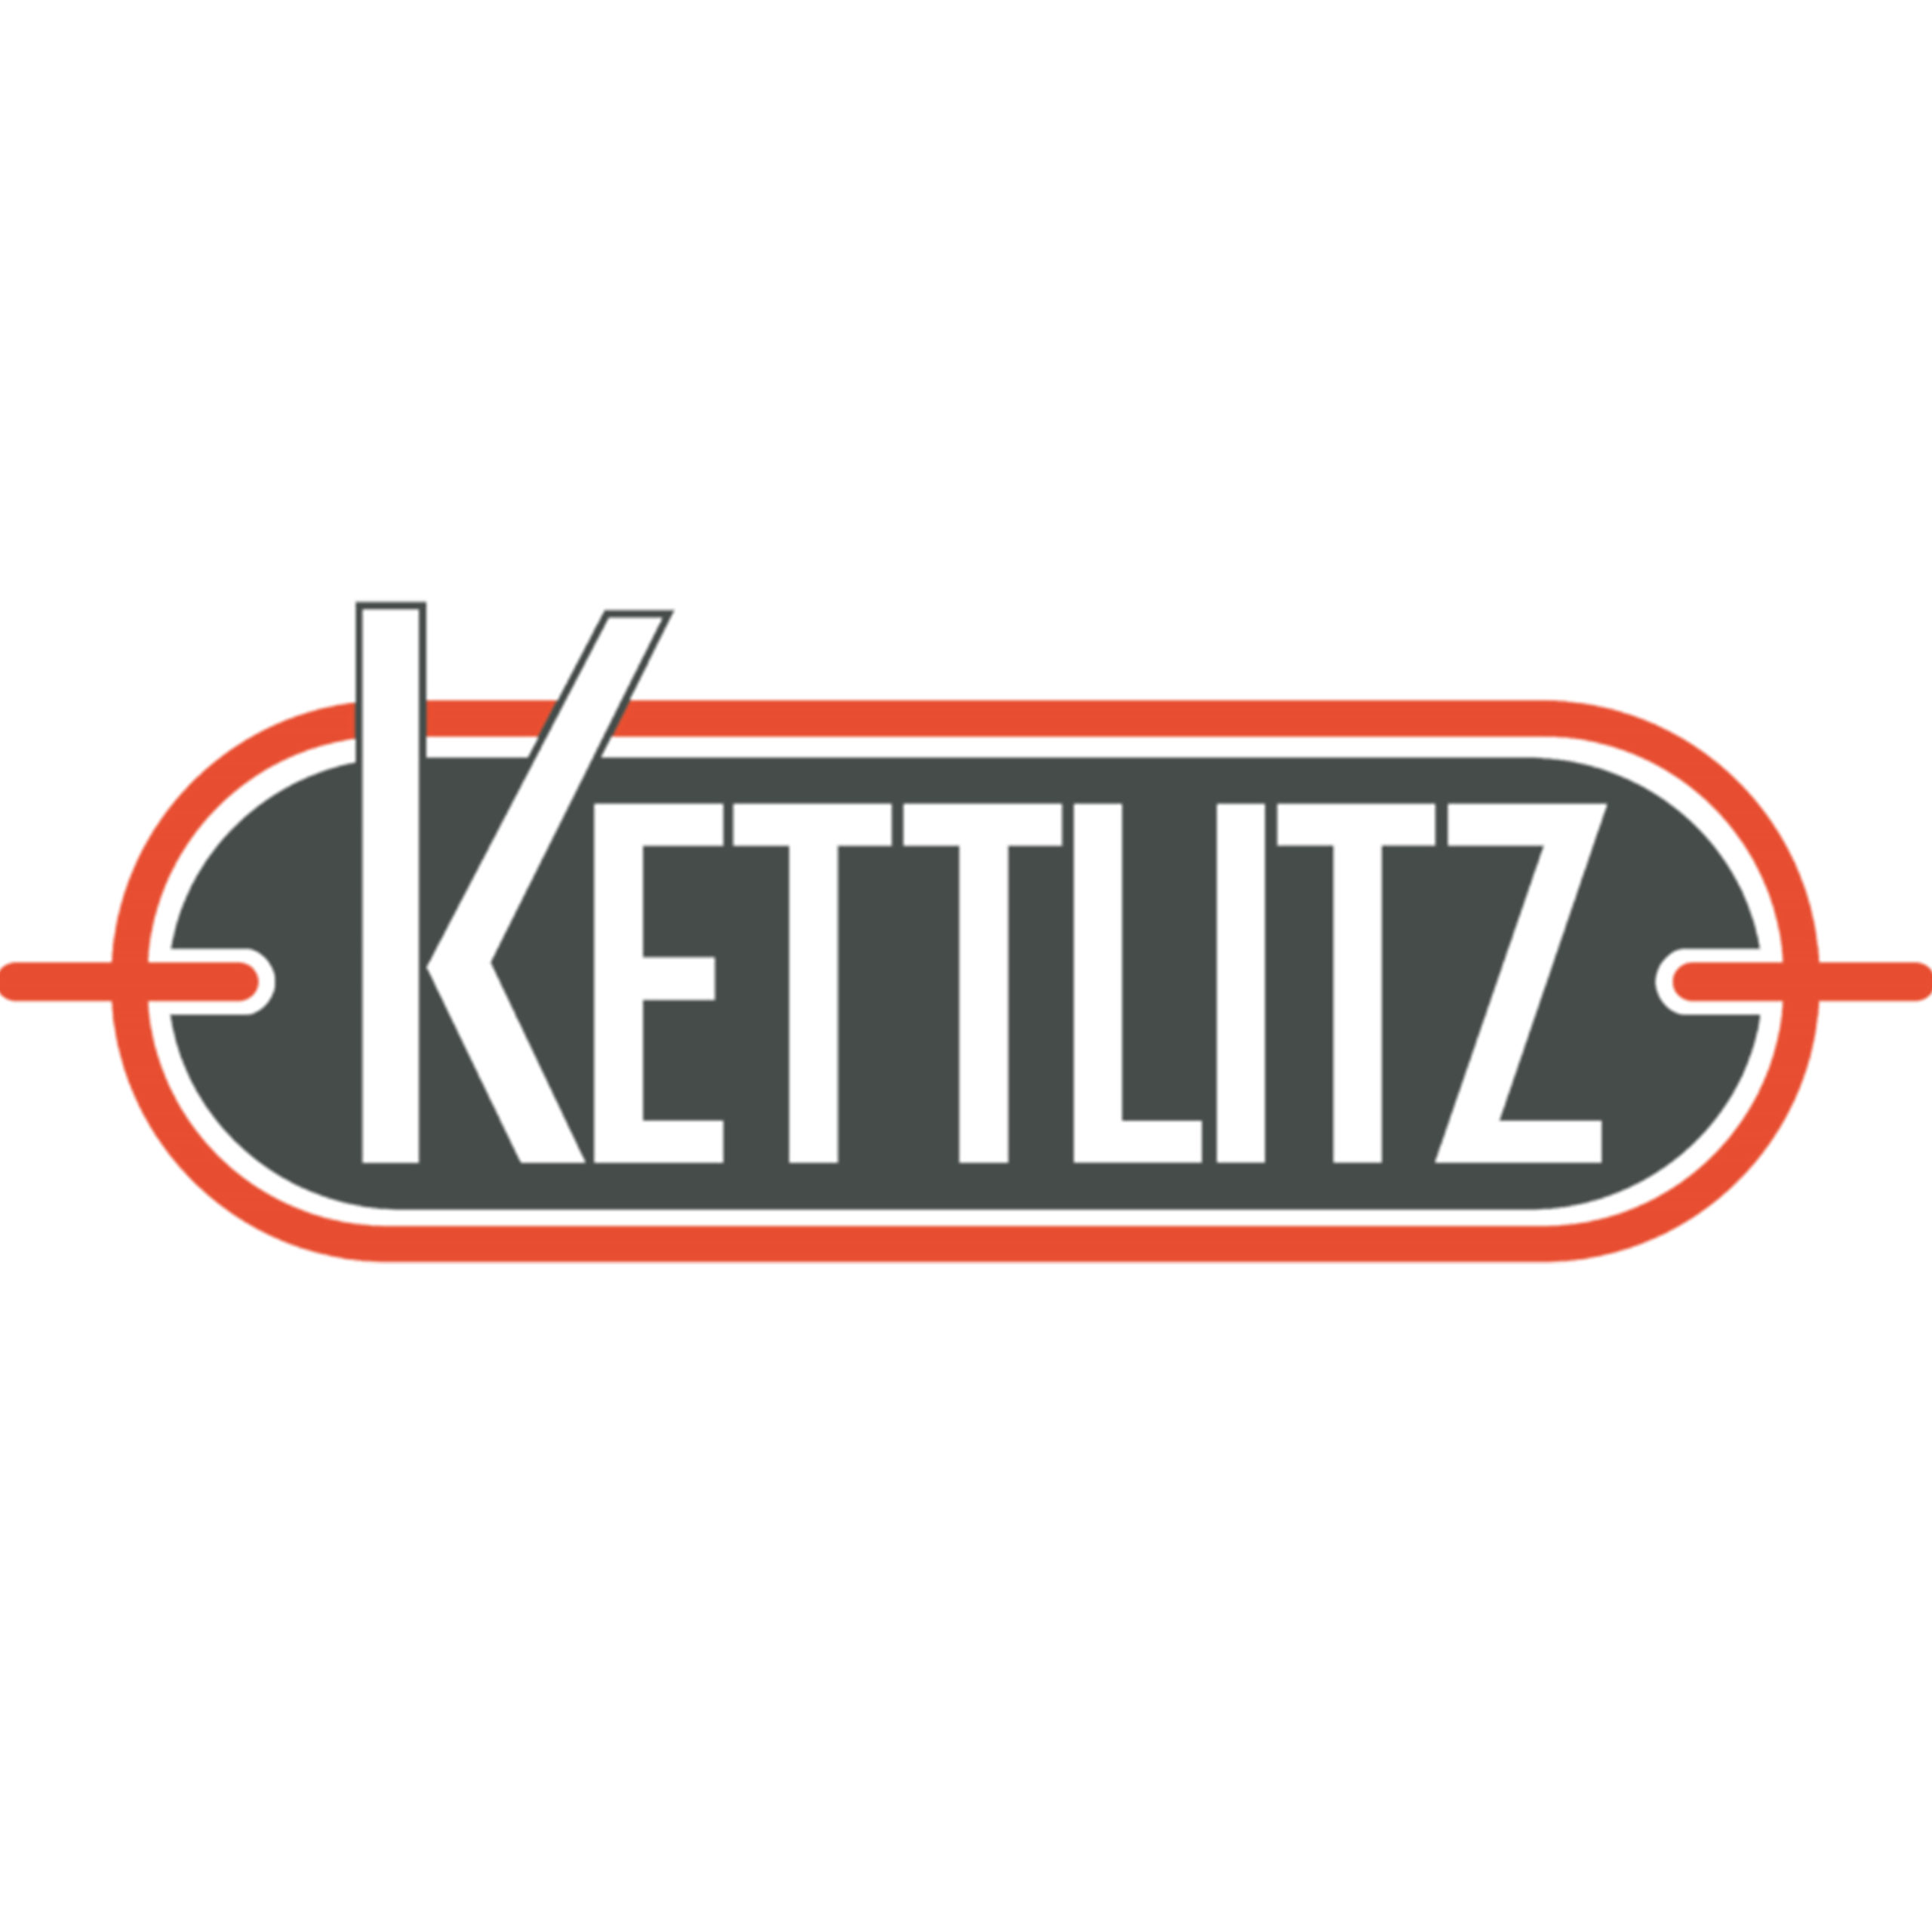 Kettlitz